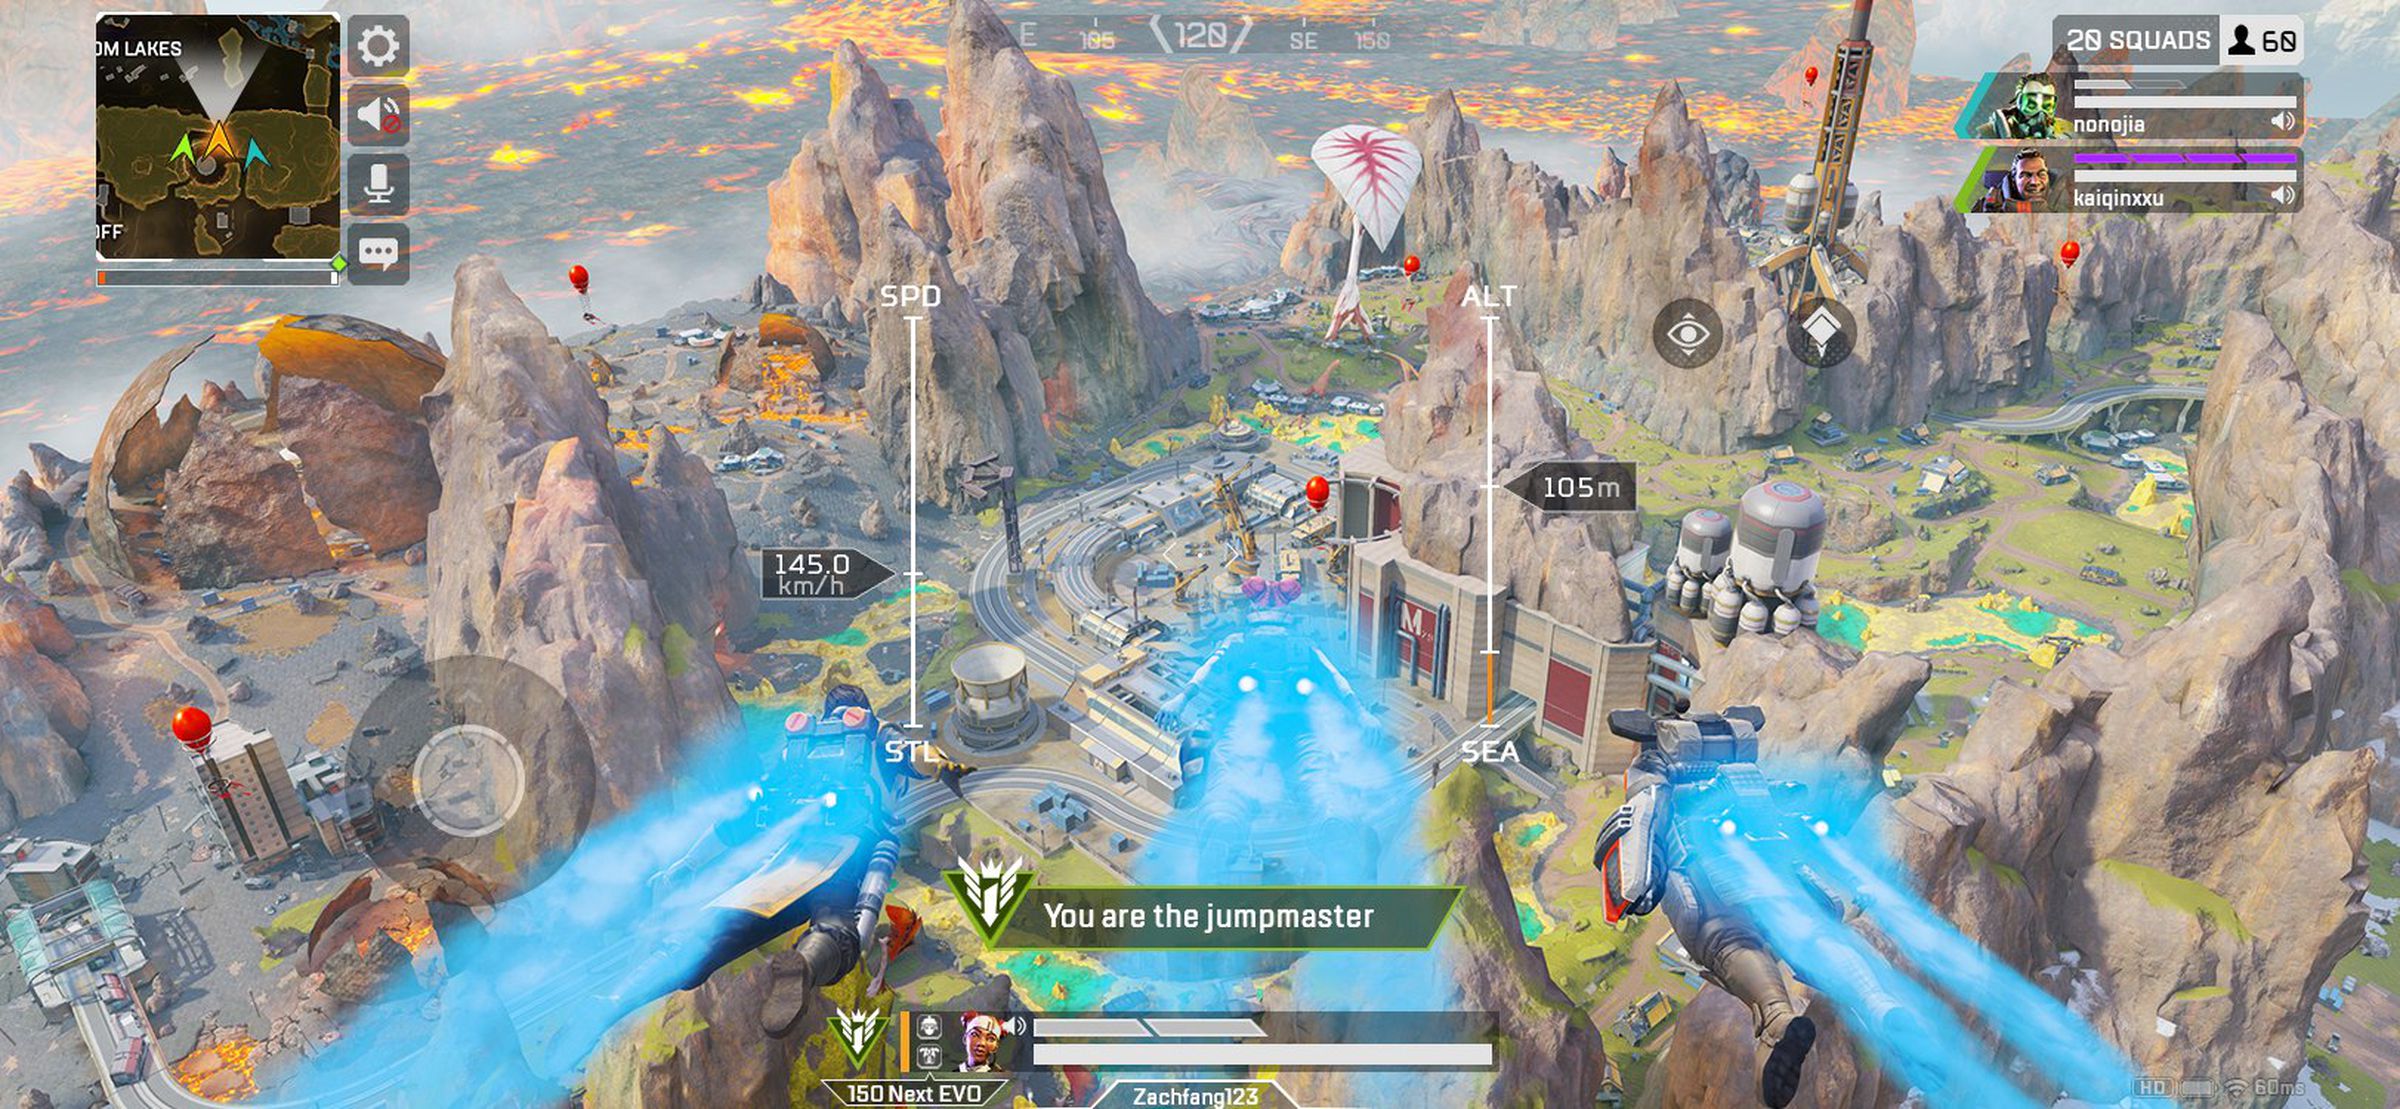 لقطة شاشة لـ Apex Legends Mobile: نهر يتدفق عبر منظر طبيعي صخري ؛  تقول التسمية التوضيحية 